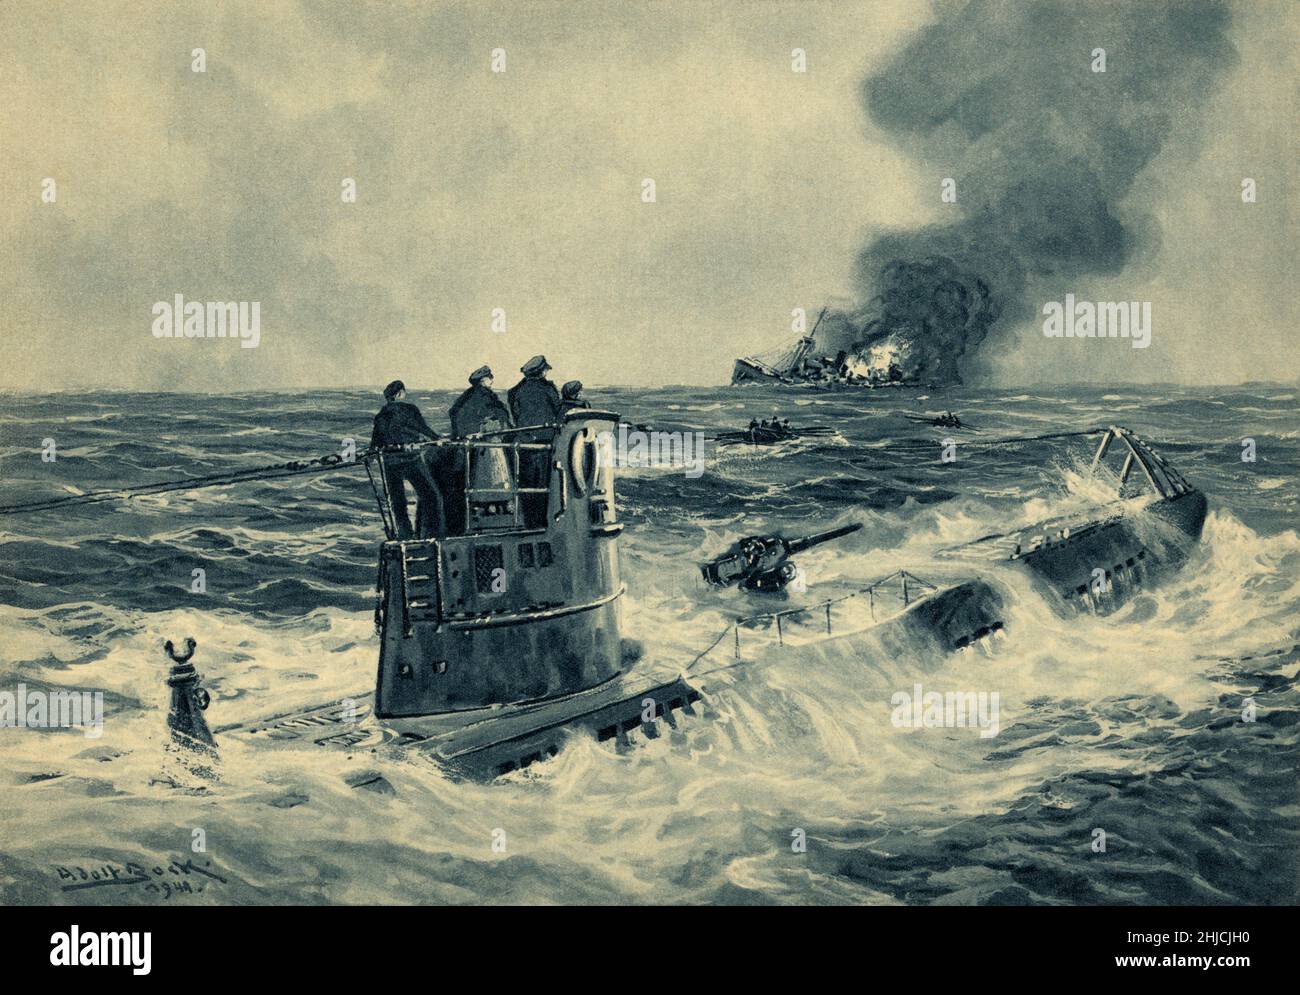 Attaque de U-boat allemand, Seconde Guerre mondialePeinture par l'artiste allemand Adolf Bock (1890-1968) de marins allemands sur la tour de conning d'un U-boat (sous-marin) qui a fait surface après le naufrage d'un cargo britannique pendant la Seconde Guerre mondiale (1939-1945).Les bateaux de sauvetage des survivants en arrière-plan. Banque D'Images